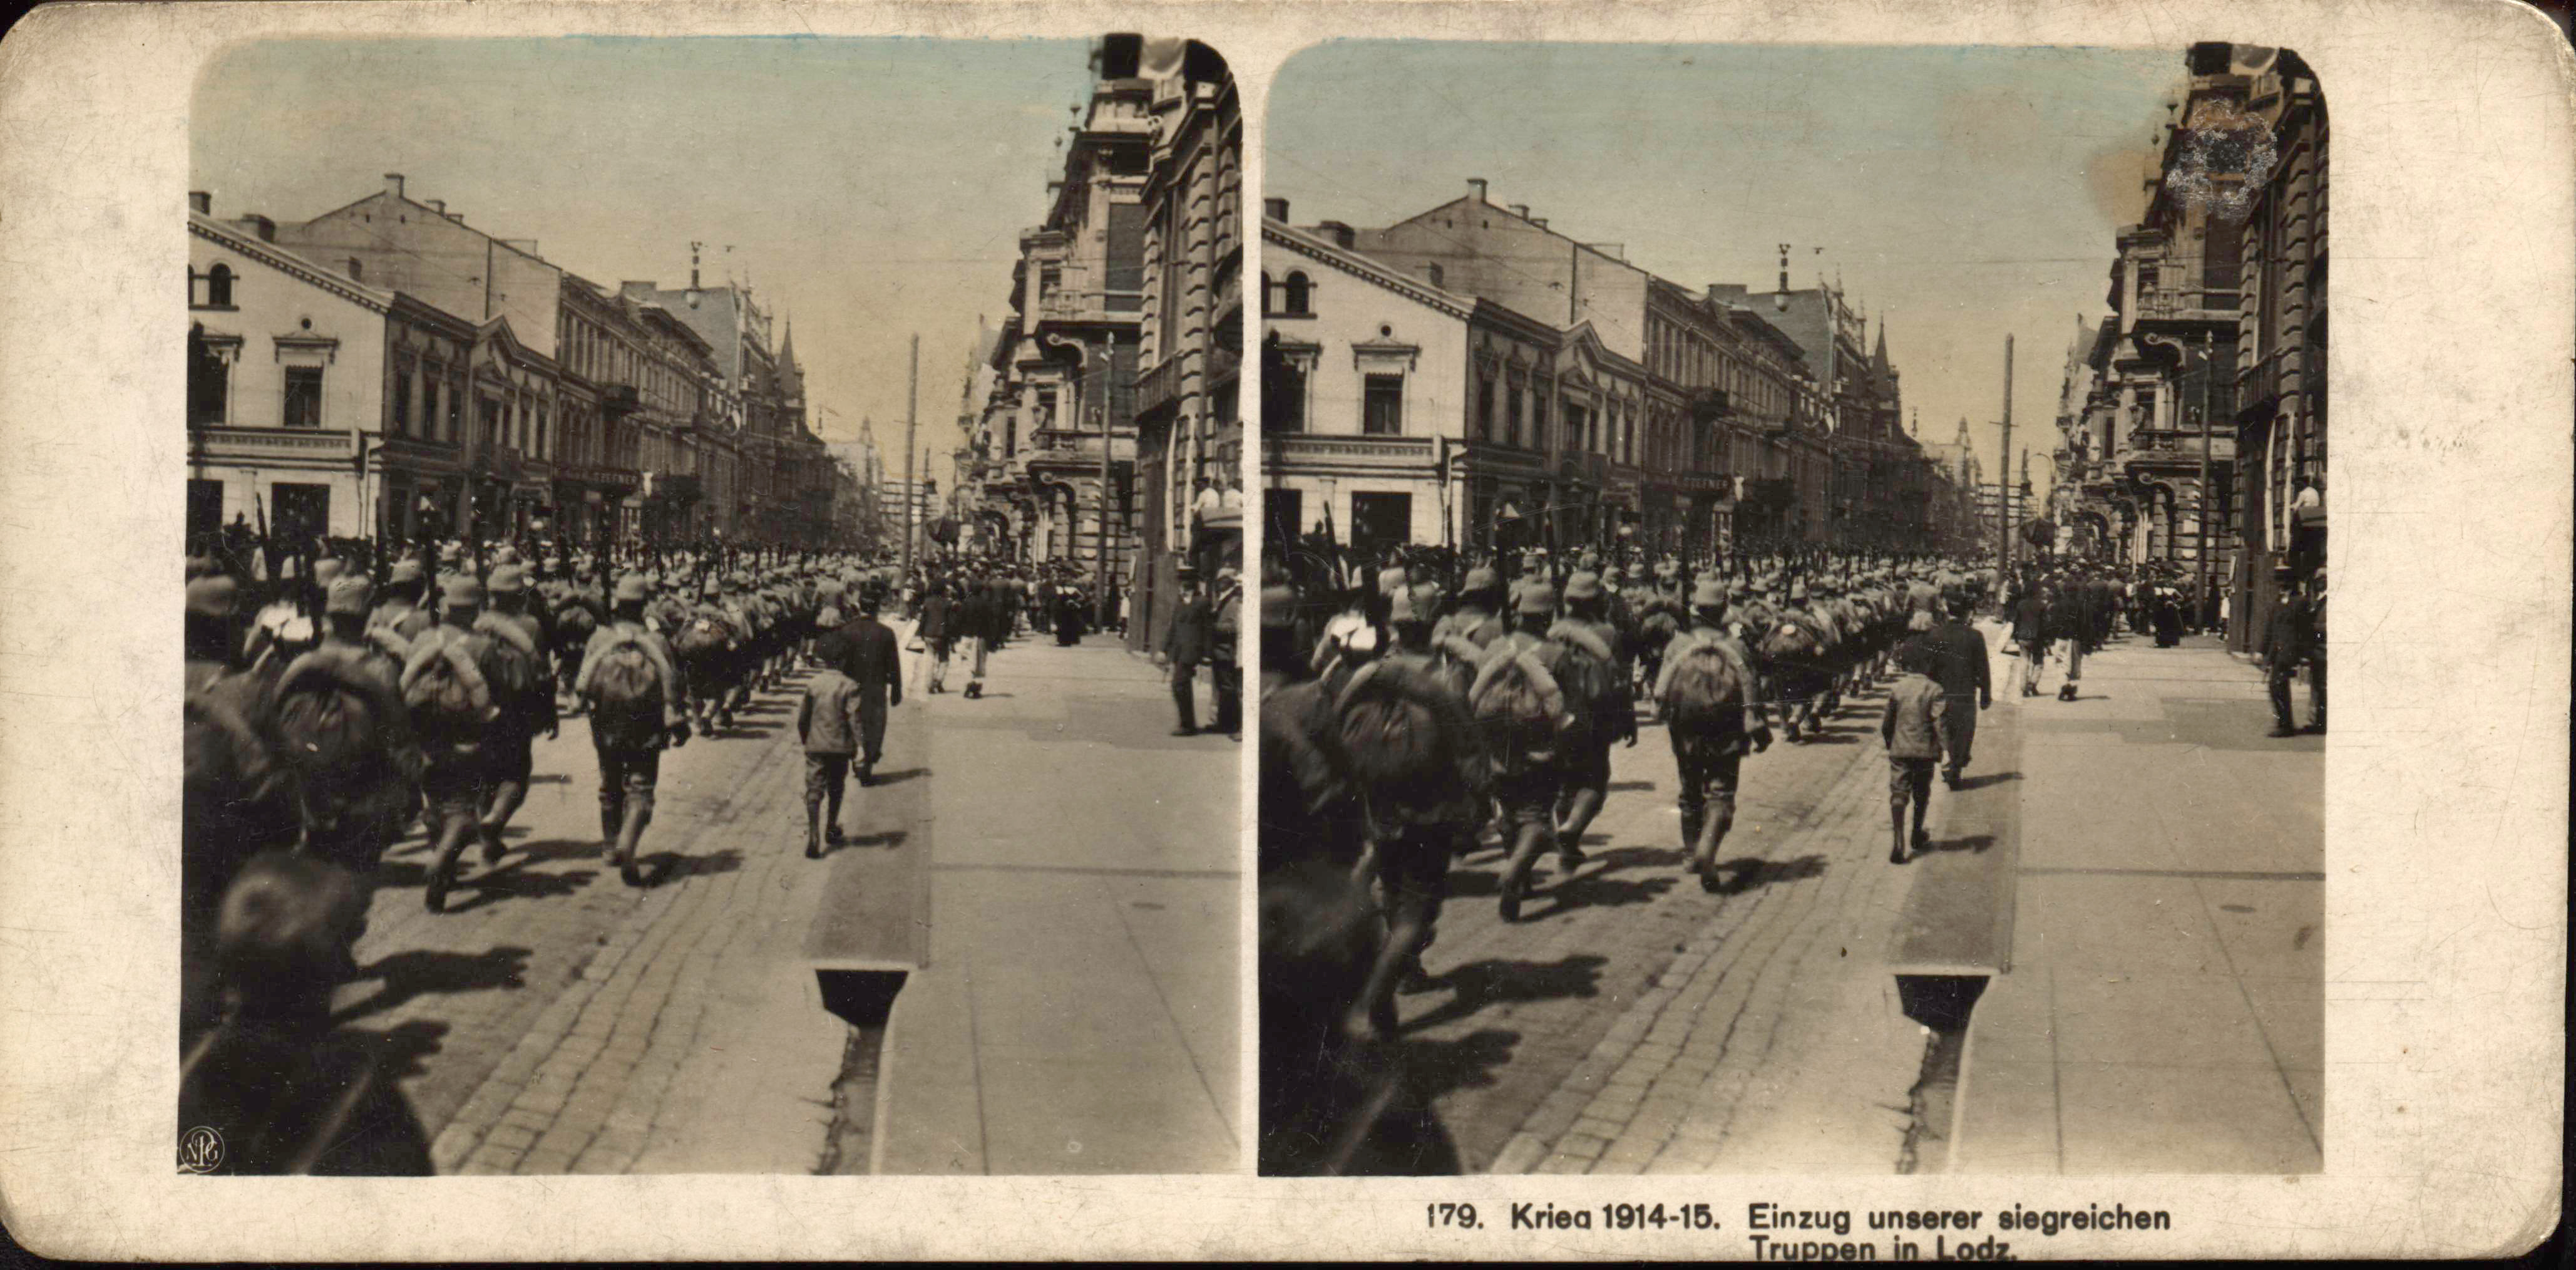 "Einzug unserer siegreichen Truppen in Lodz" - Entry of our victorious troops into Lodz